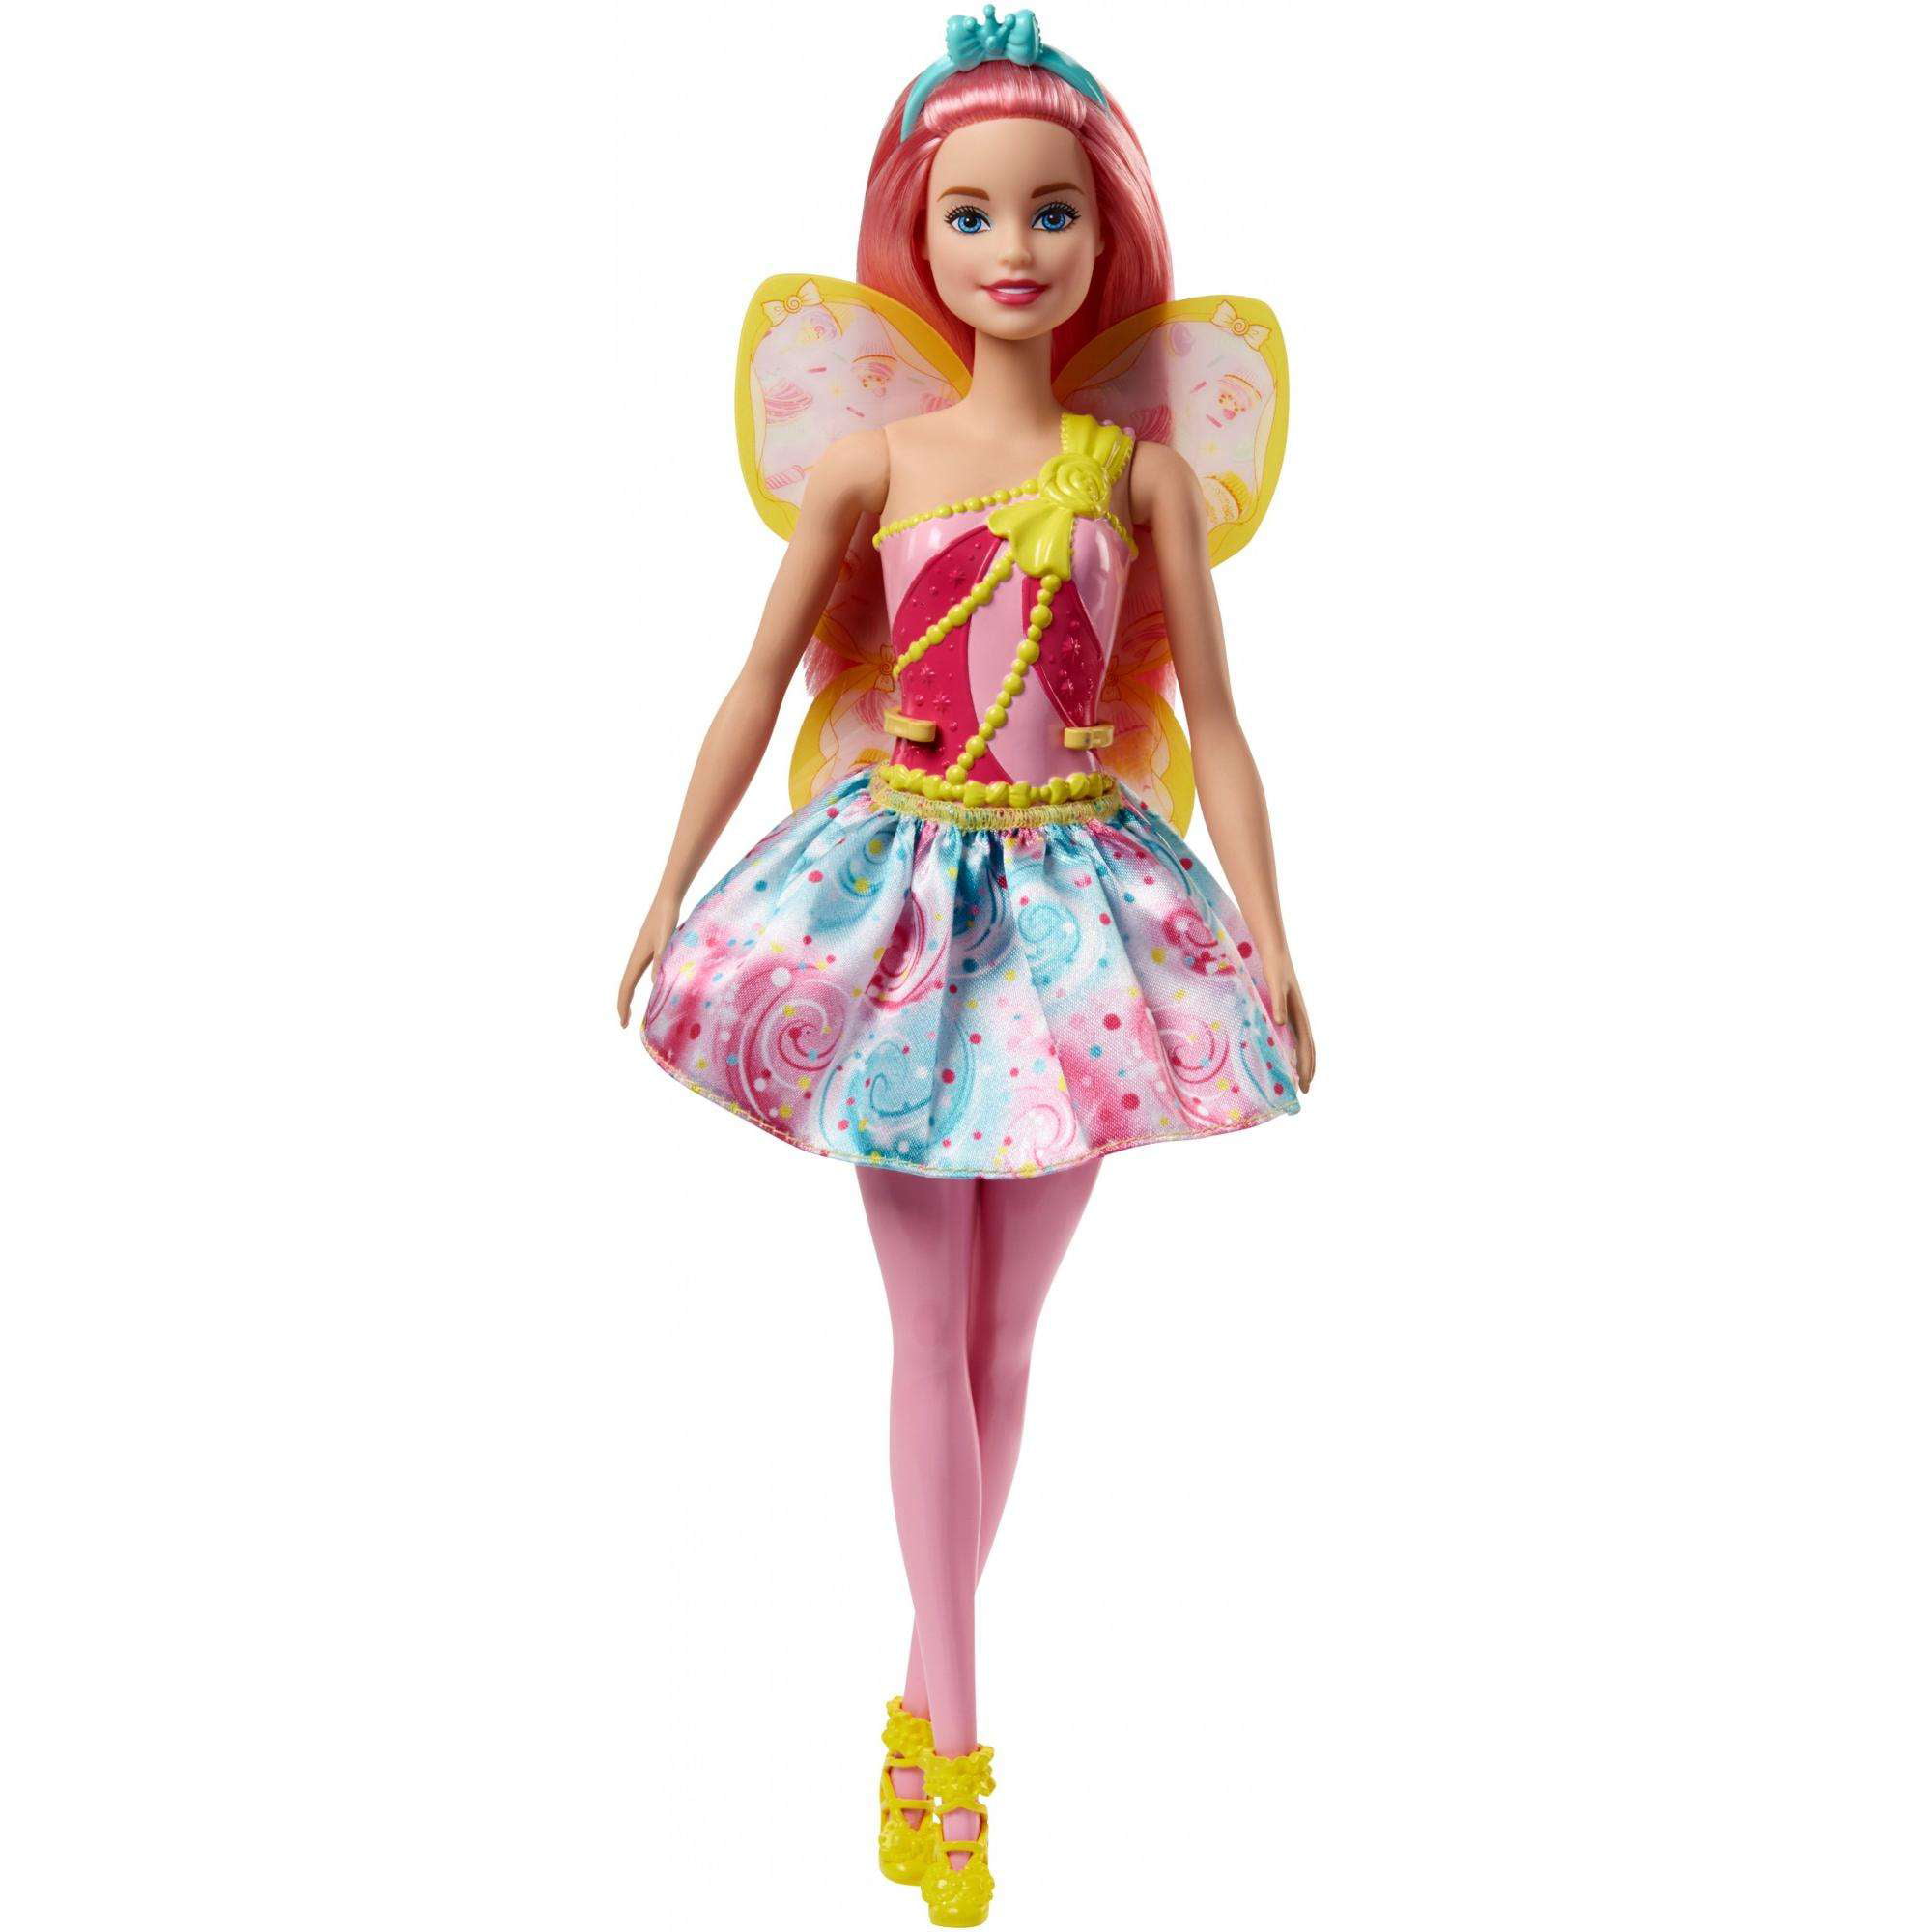 Barbie Dreamtopia Fairy Doll - Pink Hair